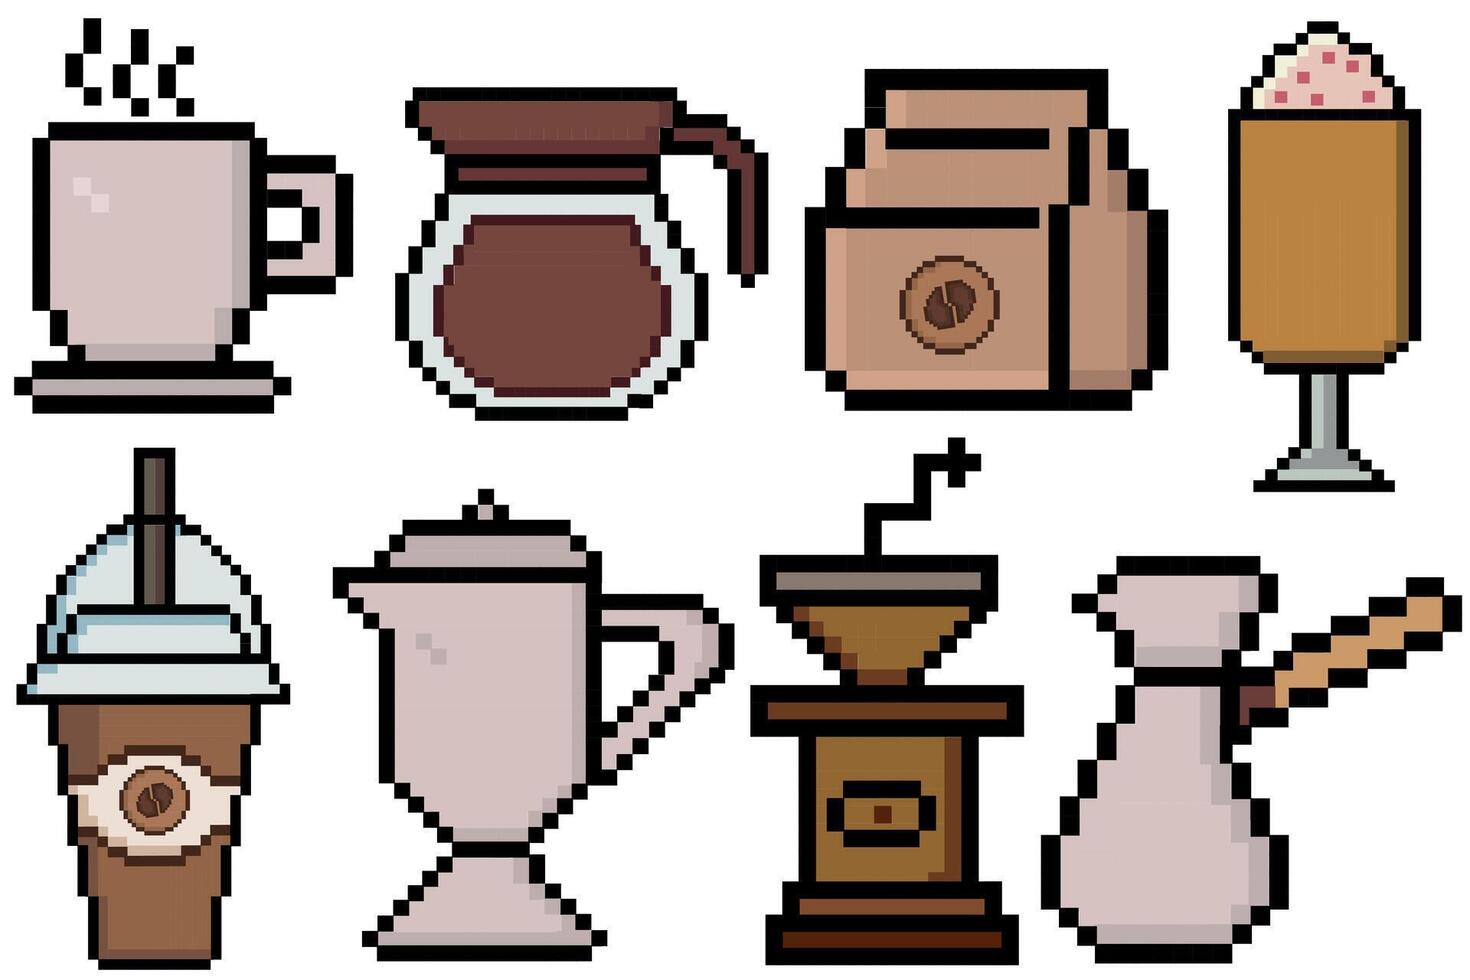 Kaffee Pixel Kunst einstellen von Symbole, Jahrgang 8 Bit, 80er, 90er Jahre Spiel Stil, Computer Arkade Spiel Artikel, Kaffee Tasse, Latté, Frappé, Cappuccino, Kaffee Topf, Paket, Tasse, Becher im pixelig Mosaik retro Spiel Stil vektor